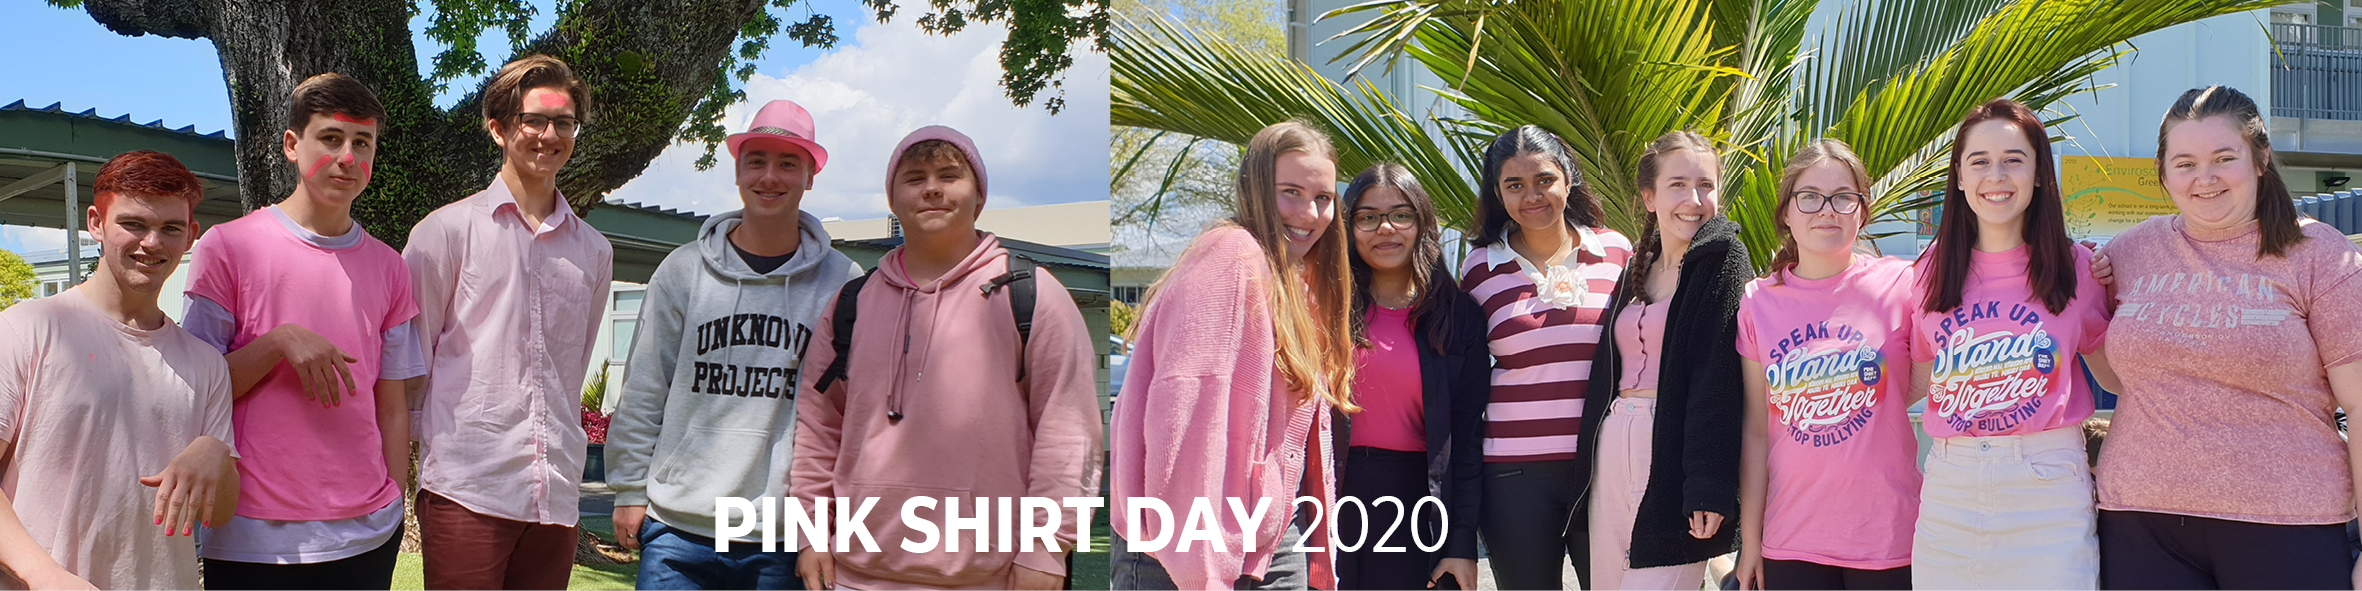 pink shirt day 2020